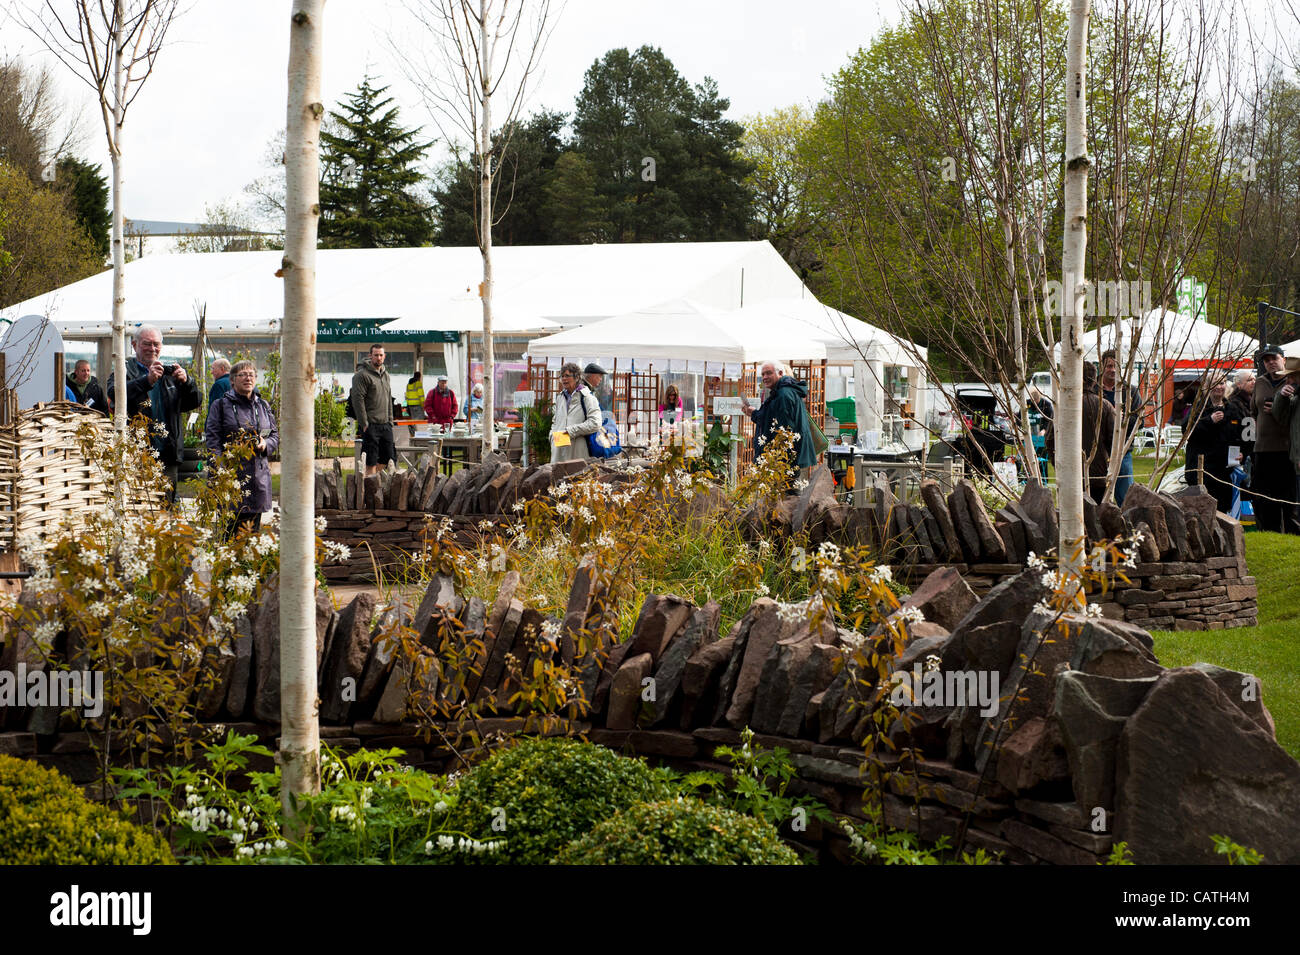 Les visiteurs appréciant les jardins et se tient le vendredi 20 avril 2012, le premier jour de l'ERS montrent Cardiff, Pays de Galles, Royaume-Uni. Flower show annuel situé dans Cardiff Bute Park. Banque D'Images